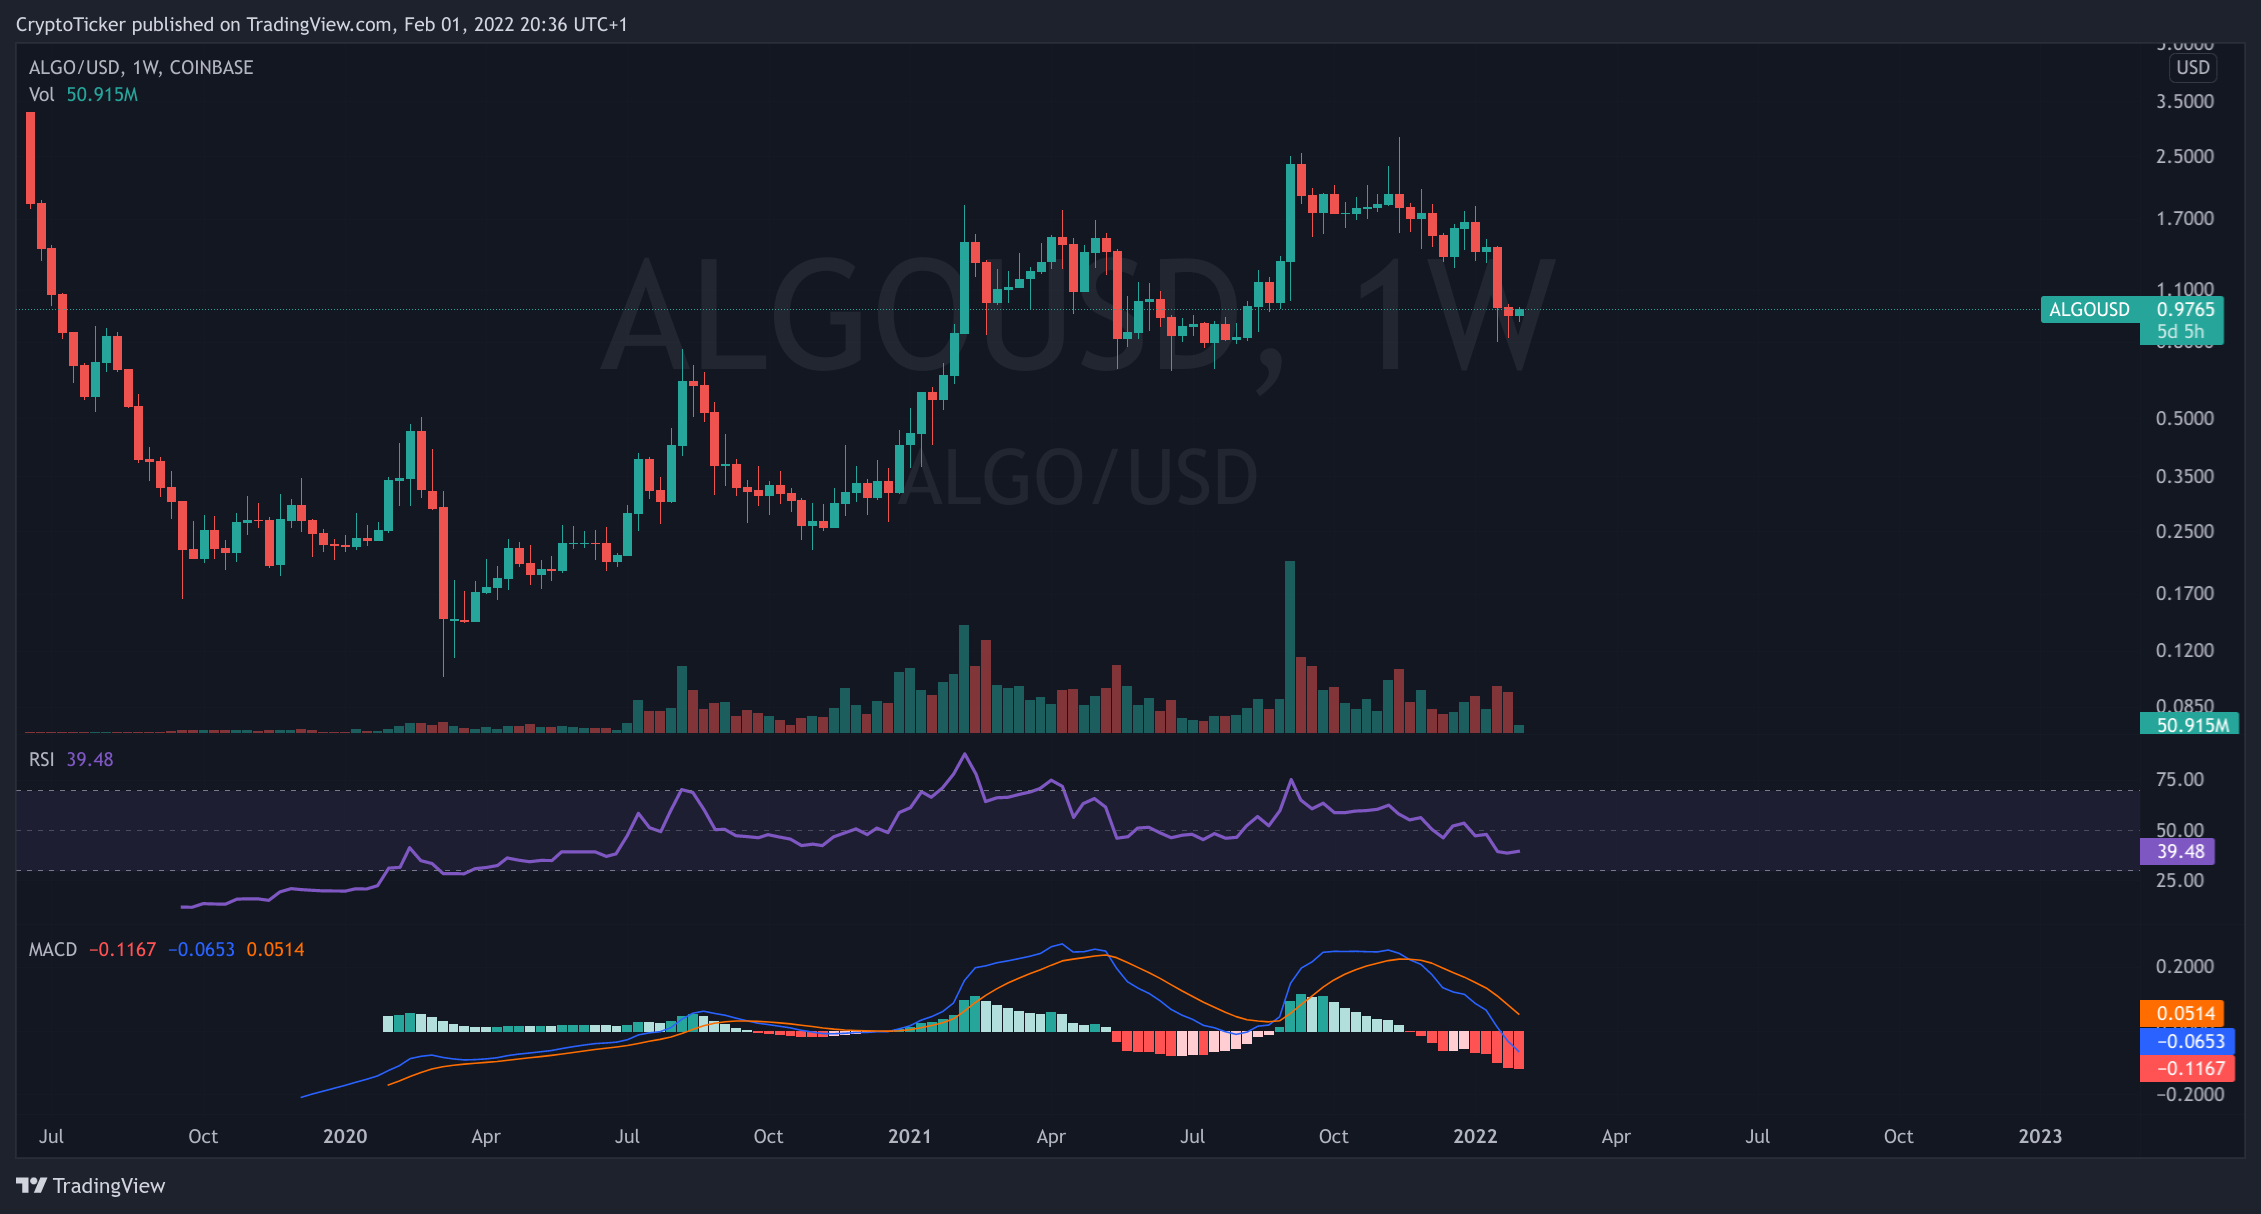 ALGO/USD 1-week chart